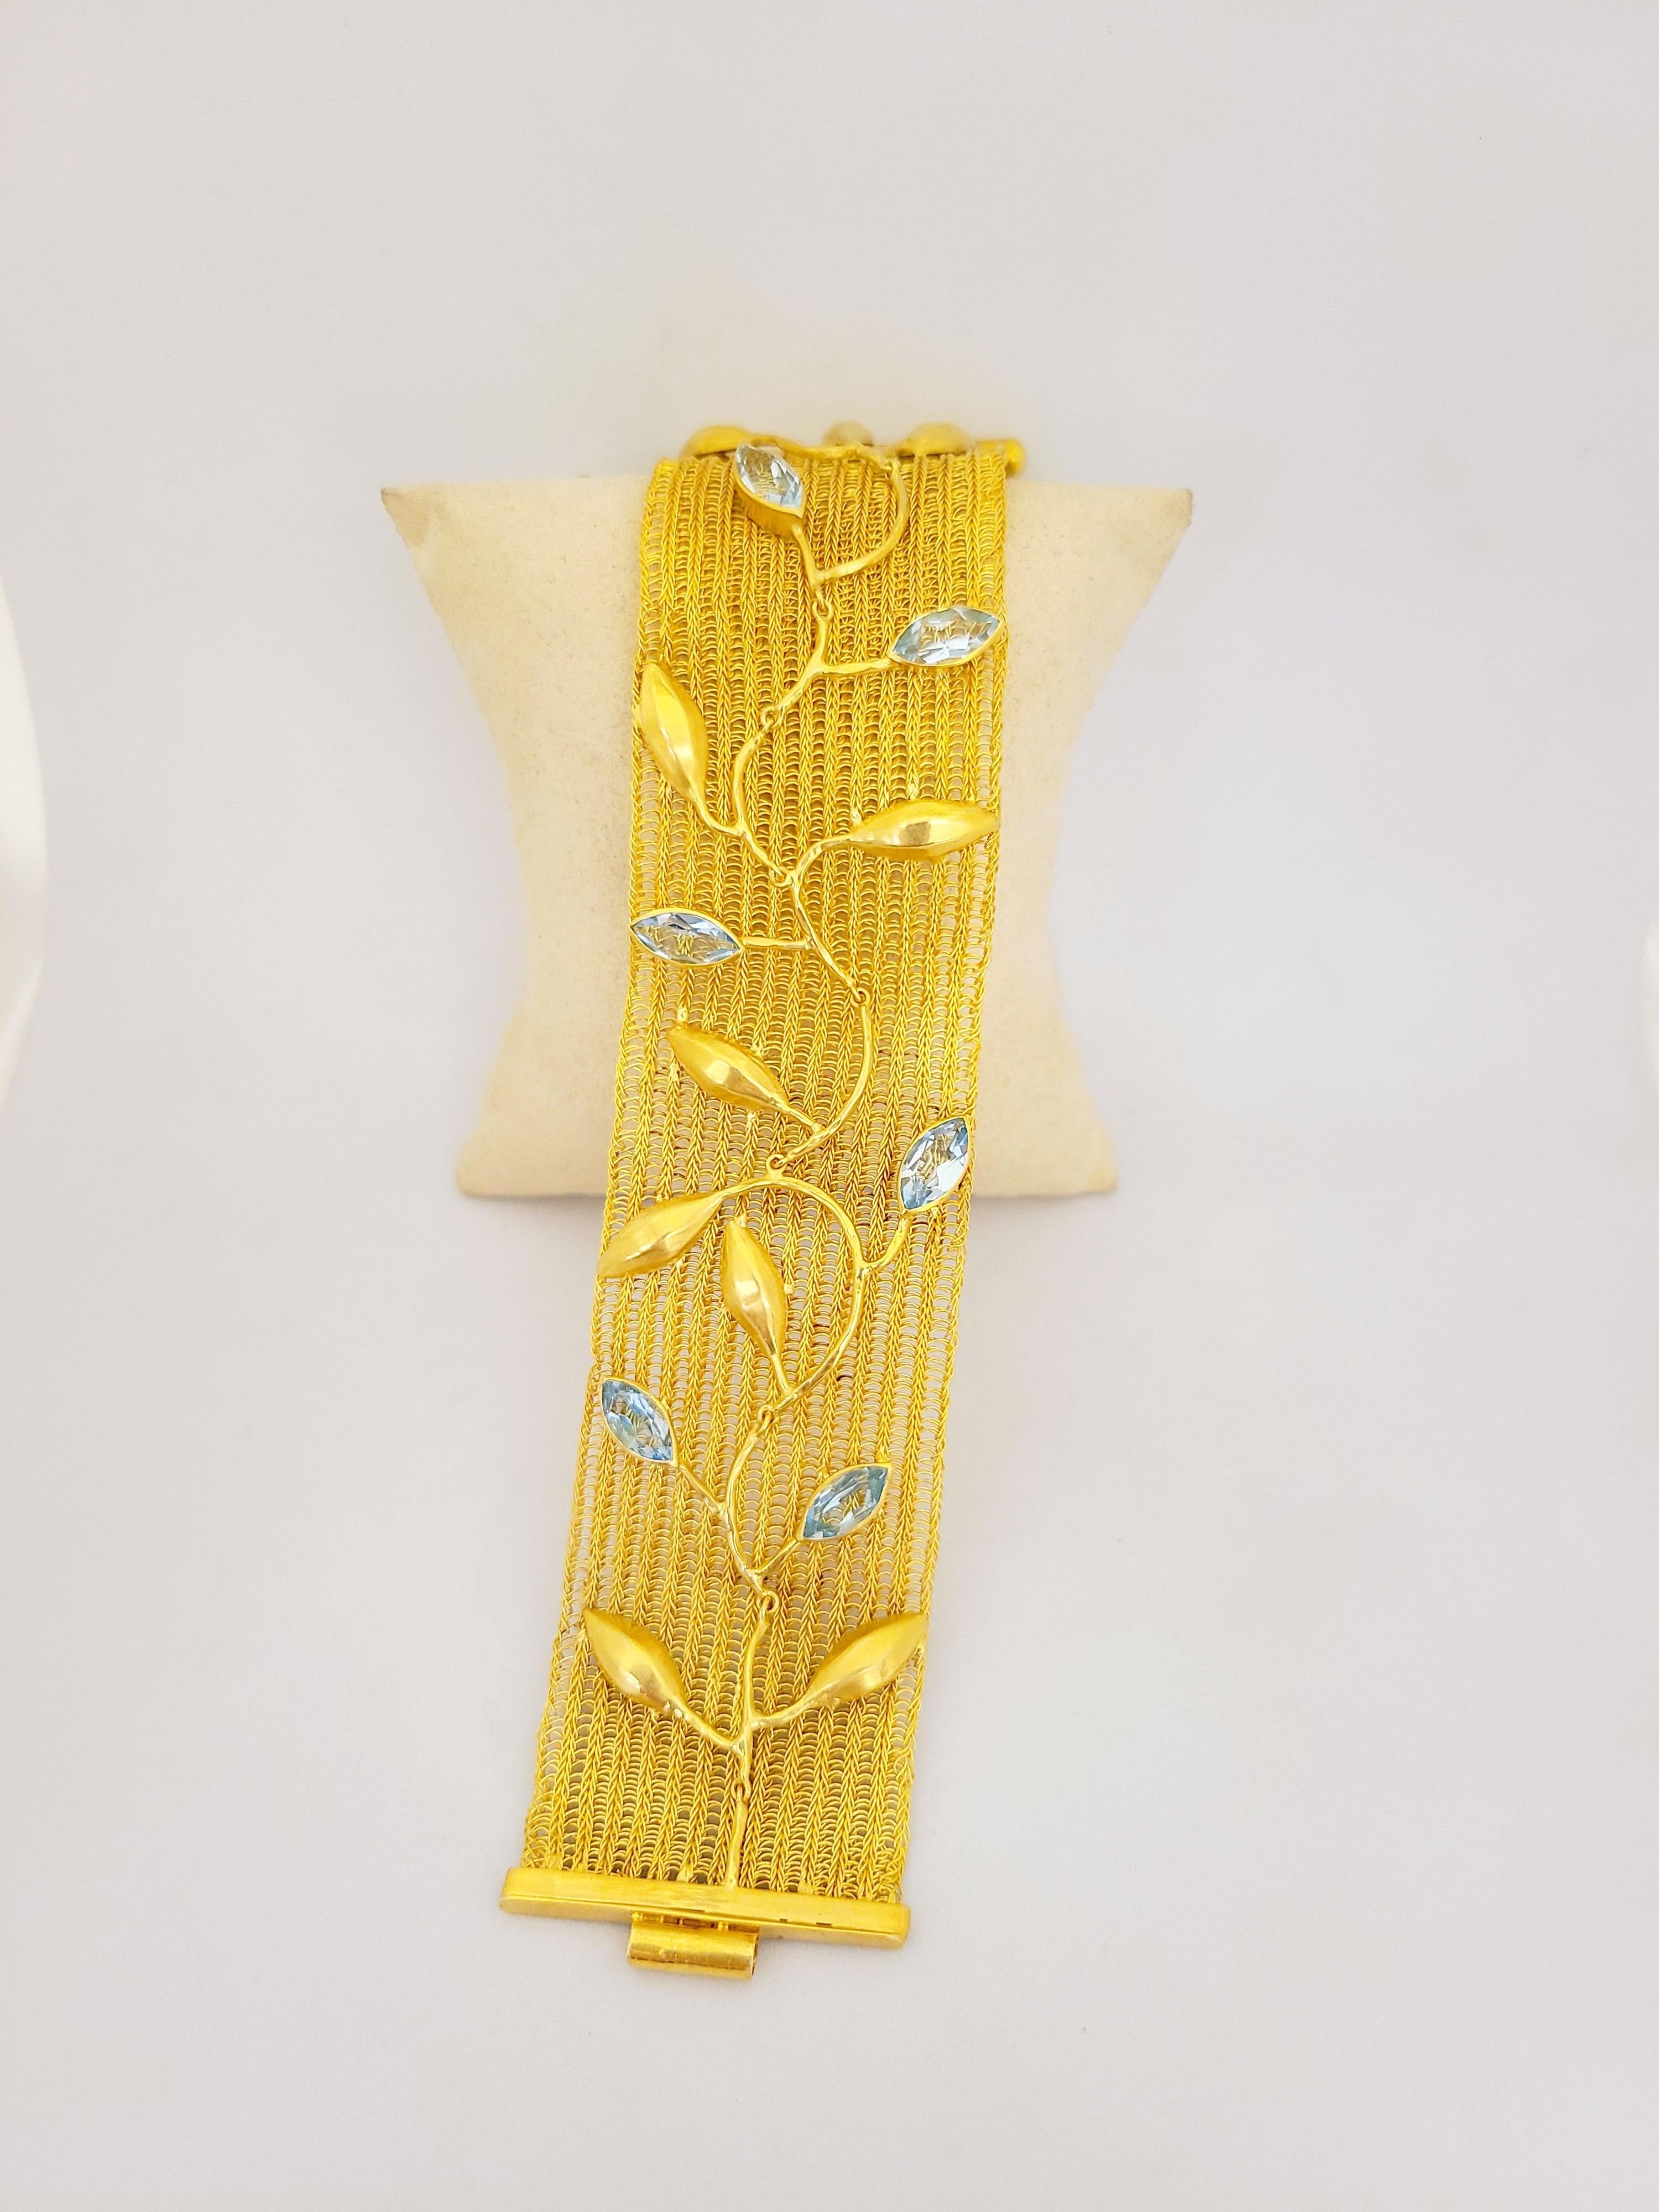 Dieses wunderschöne Armband besteht aus handgewebtem 18-karätigem Gelbgold und ist mit 7 Karat Blautopas im Marquis-Schliff und satinierten Goldblättern verziert. Das Stück ist zeitlos und feminin. 
Armband misst 7